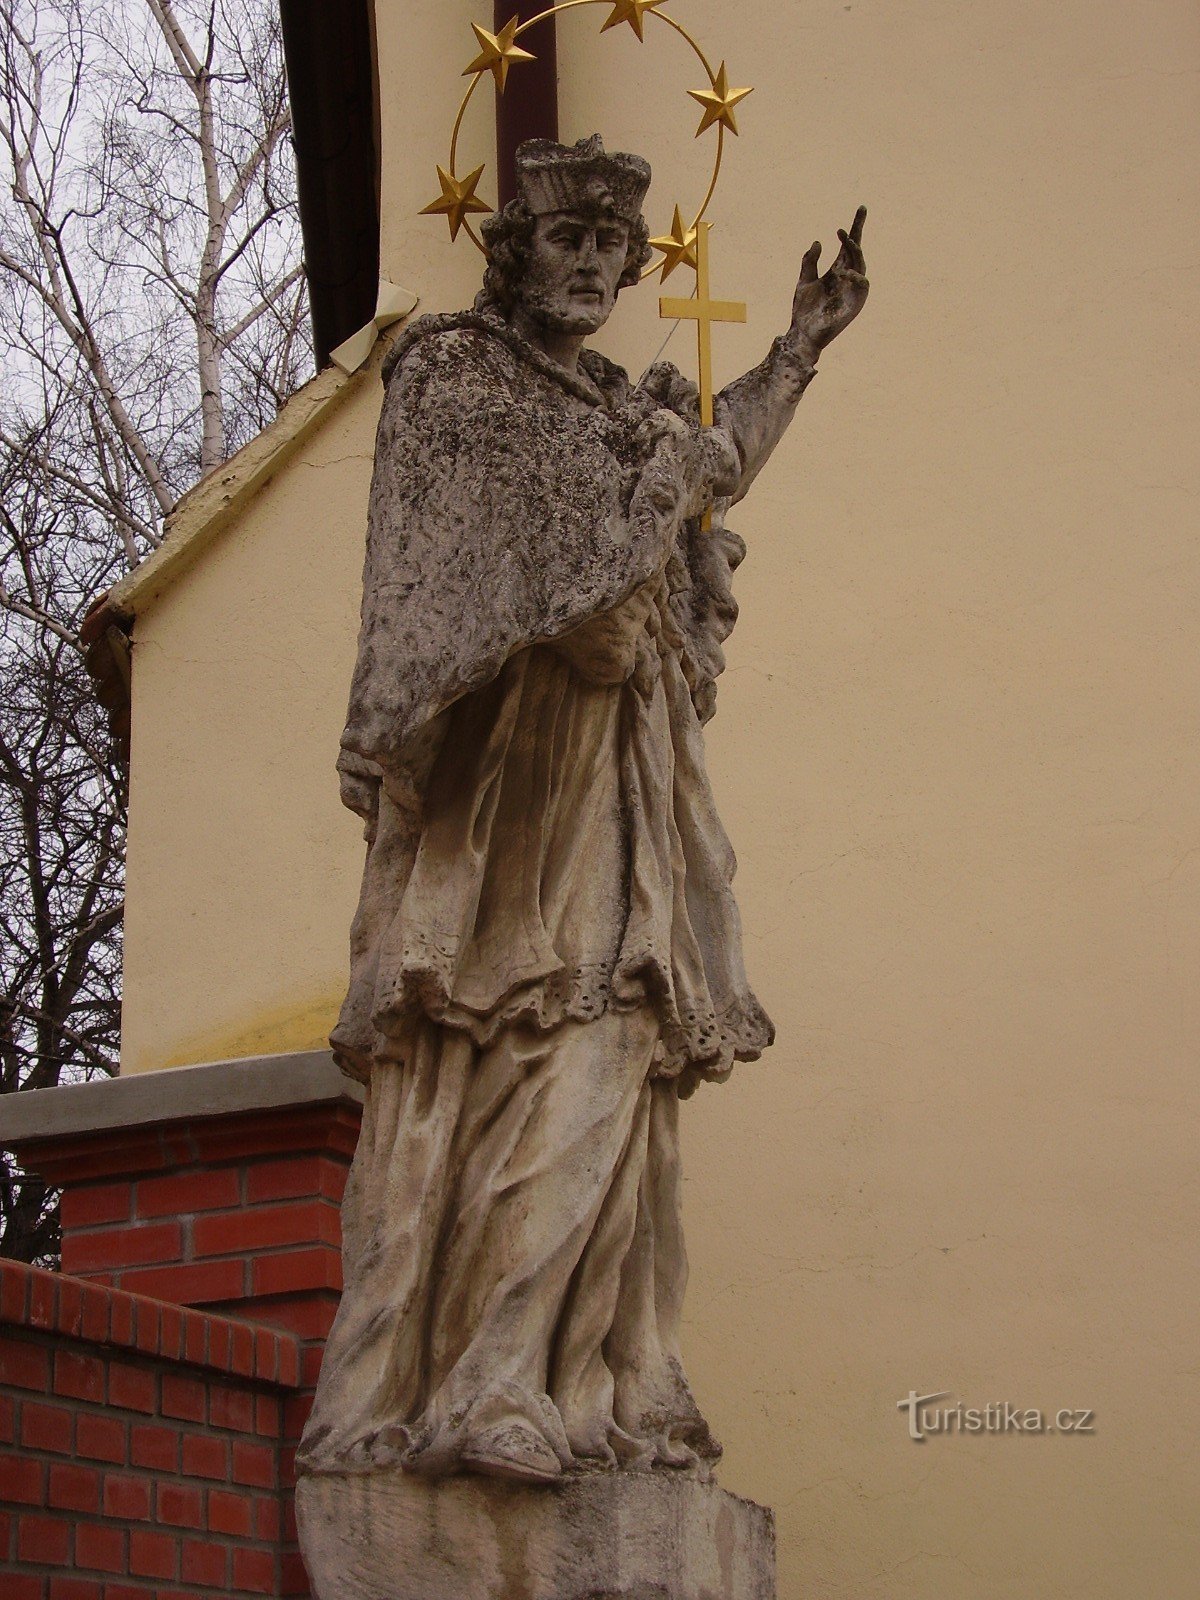 Statue af St. Jan Nepomucký i Šlapanice nær Brno